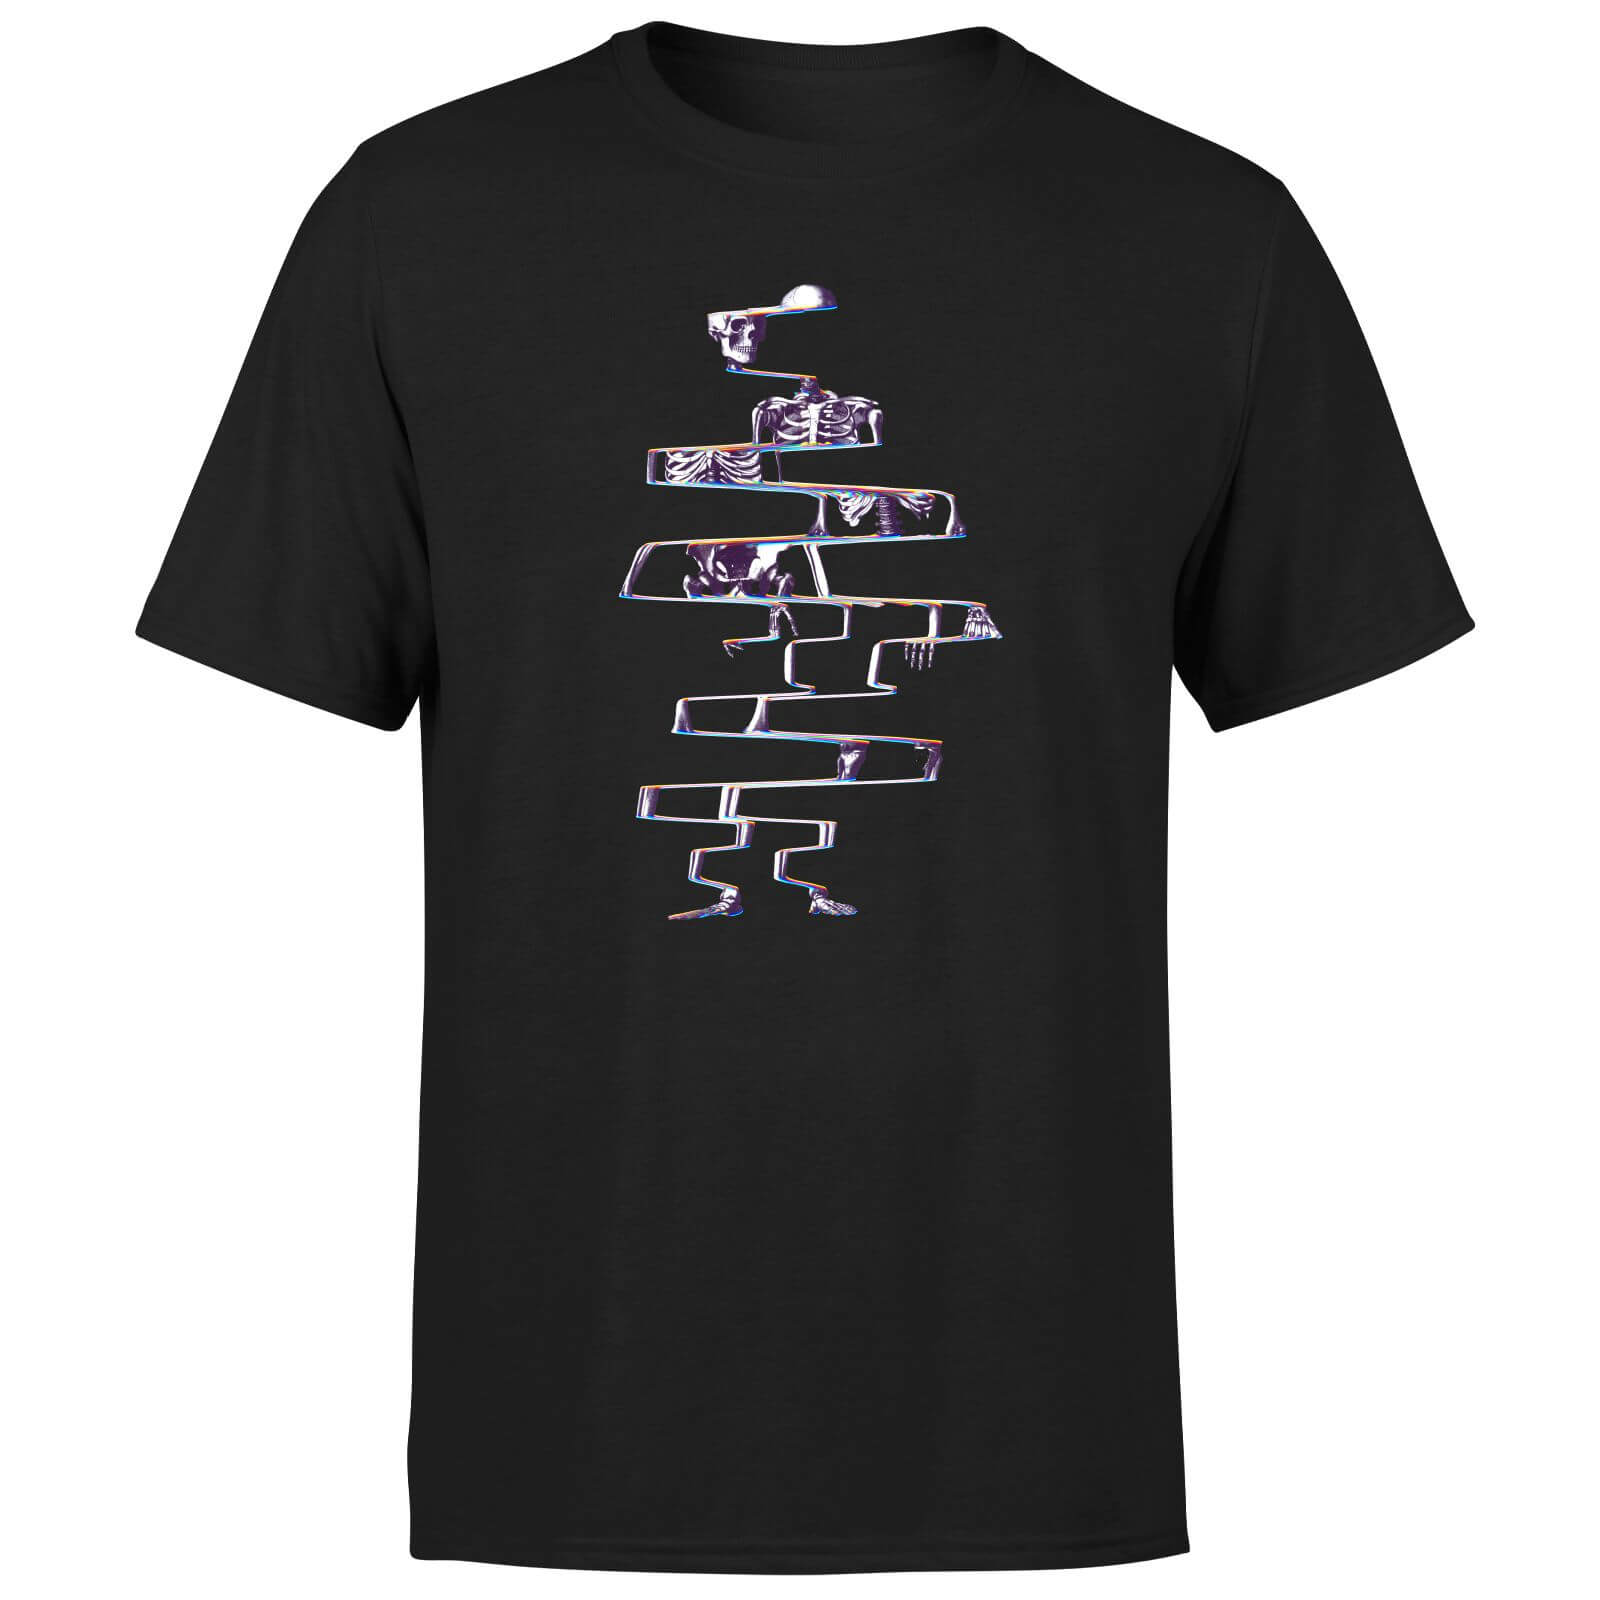 Ikiiki Skeleton Men's T-Shirt - Black - XS - Black